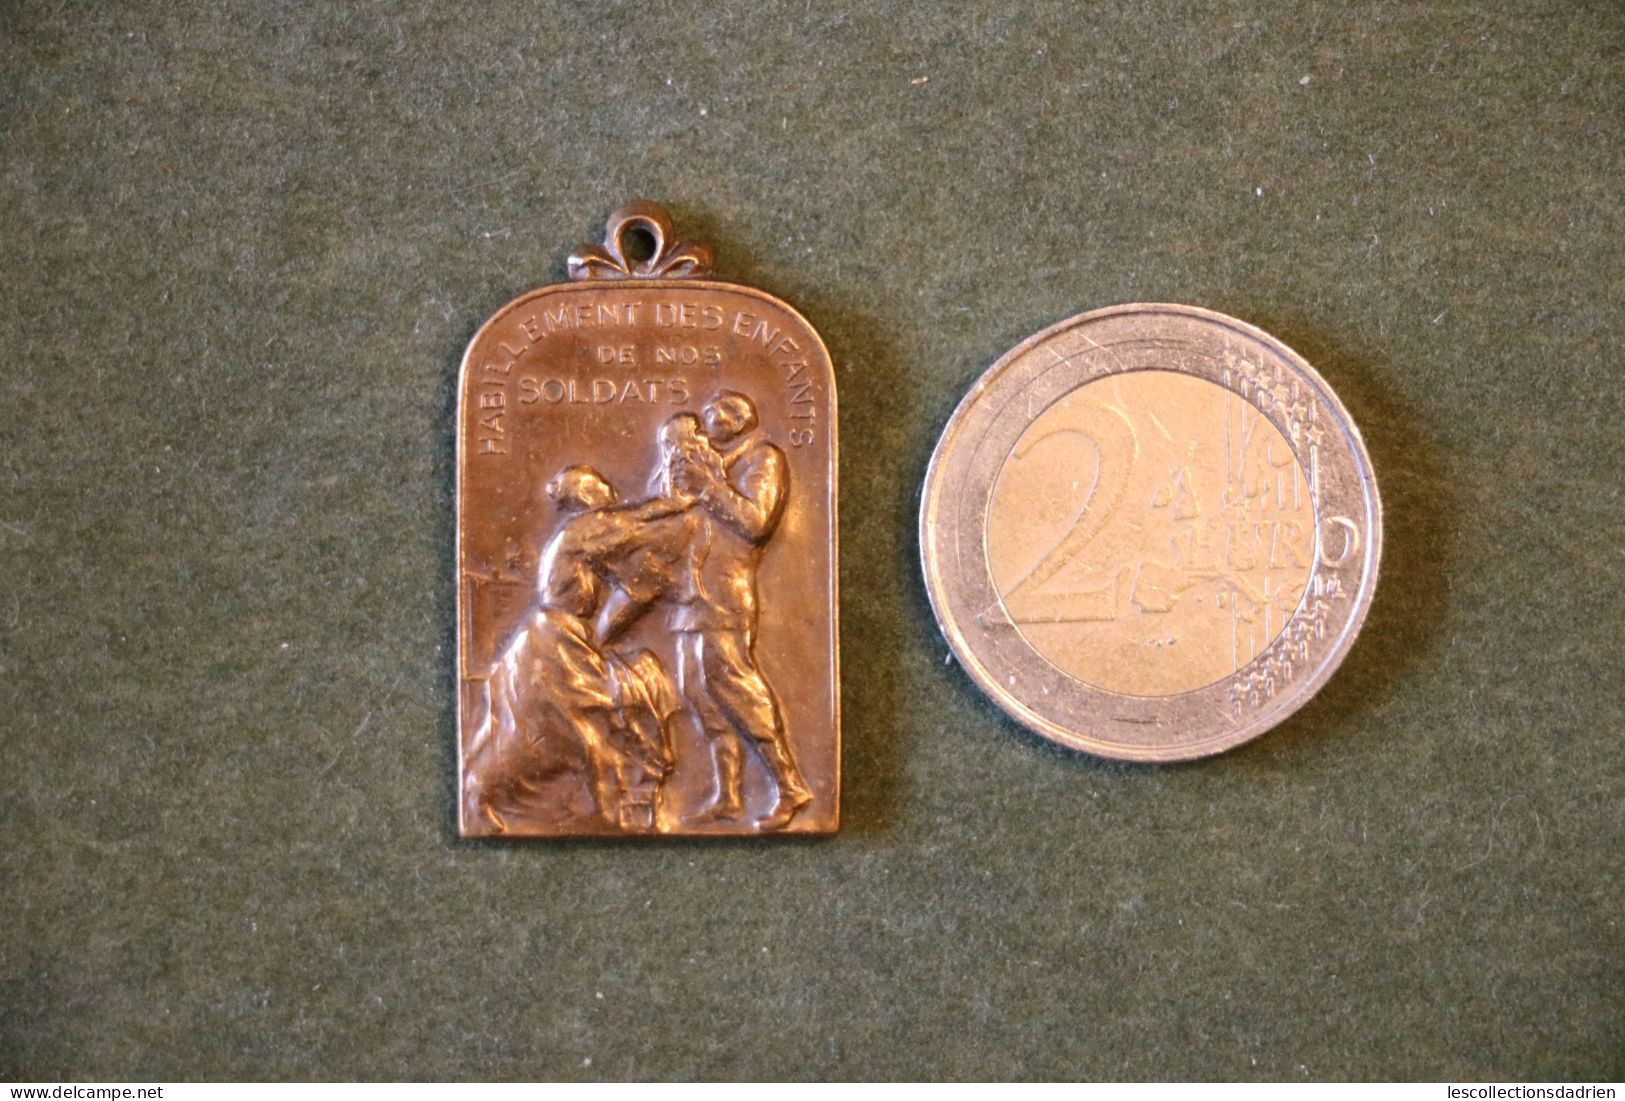 Médaille Habillement Des Enfants De Nos Soldats Guerre14-18 Bronze Belgian Medal Wwi - Médaillette - Journée - Charlier - Belgien